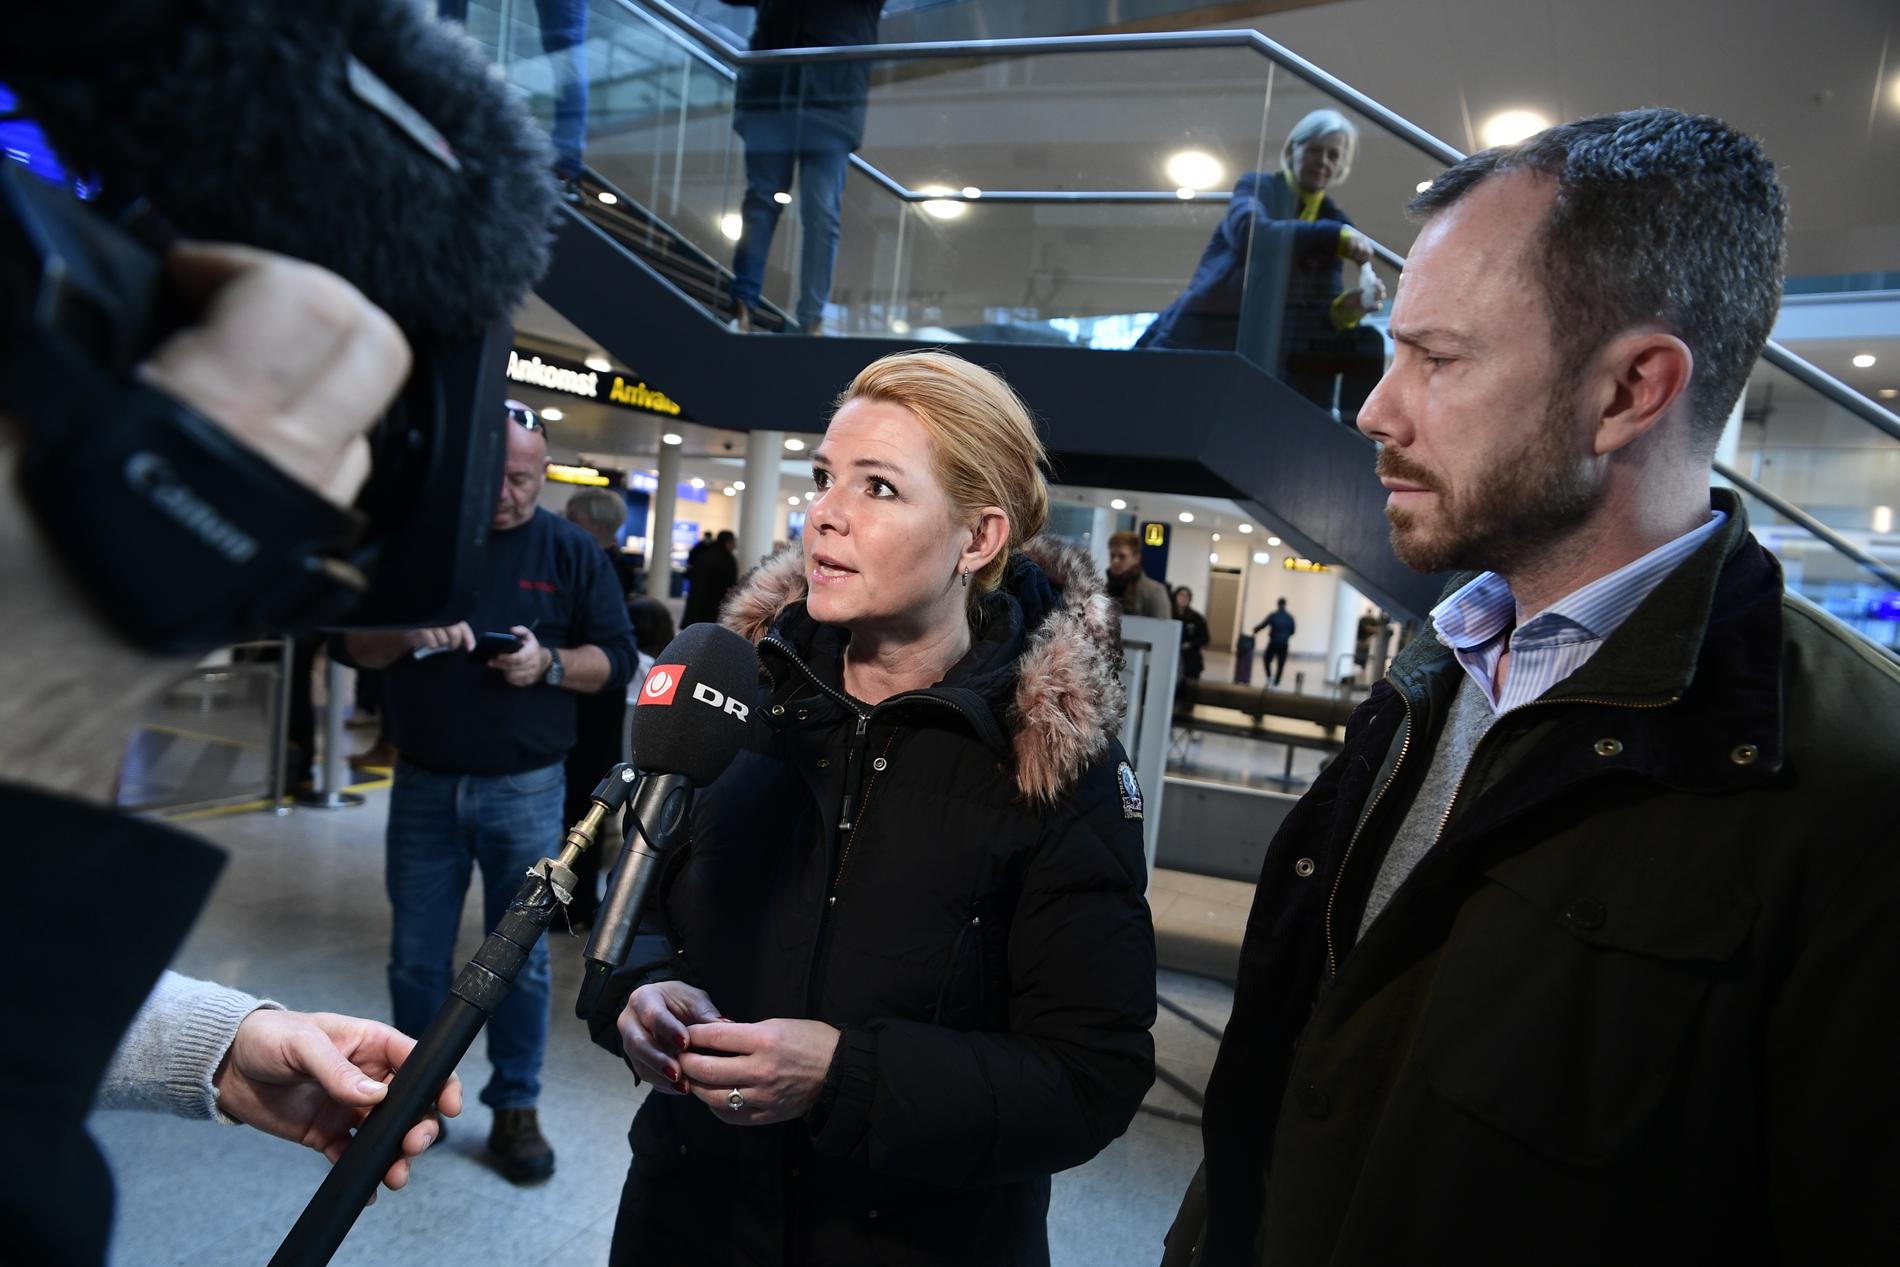 Danmarks tidigare invandrings- och integrationsminister Inger Støjberg riskerar att ställas inför riksrätt. I slutet av 2020 tvingades hon bort som vice ordförande för borgerliga Venstre av nuvarande partiledaren Jakob Ellemann-Jensen, som syns här till höger. Arkivbild.